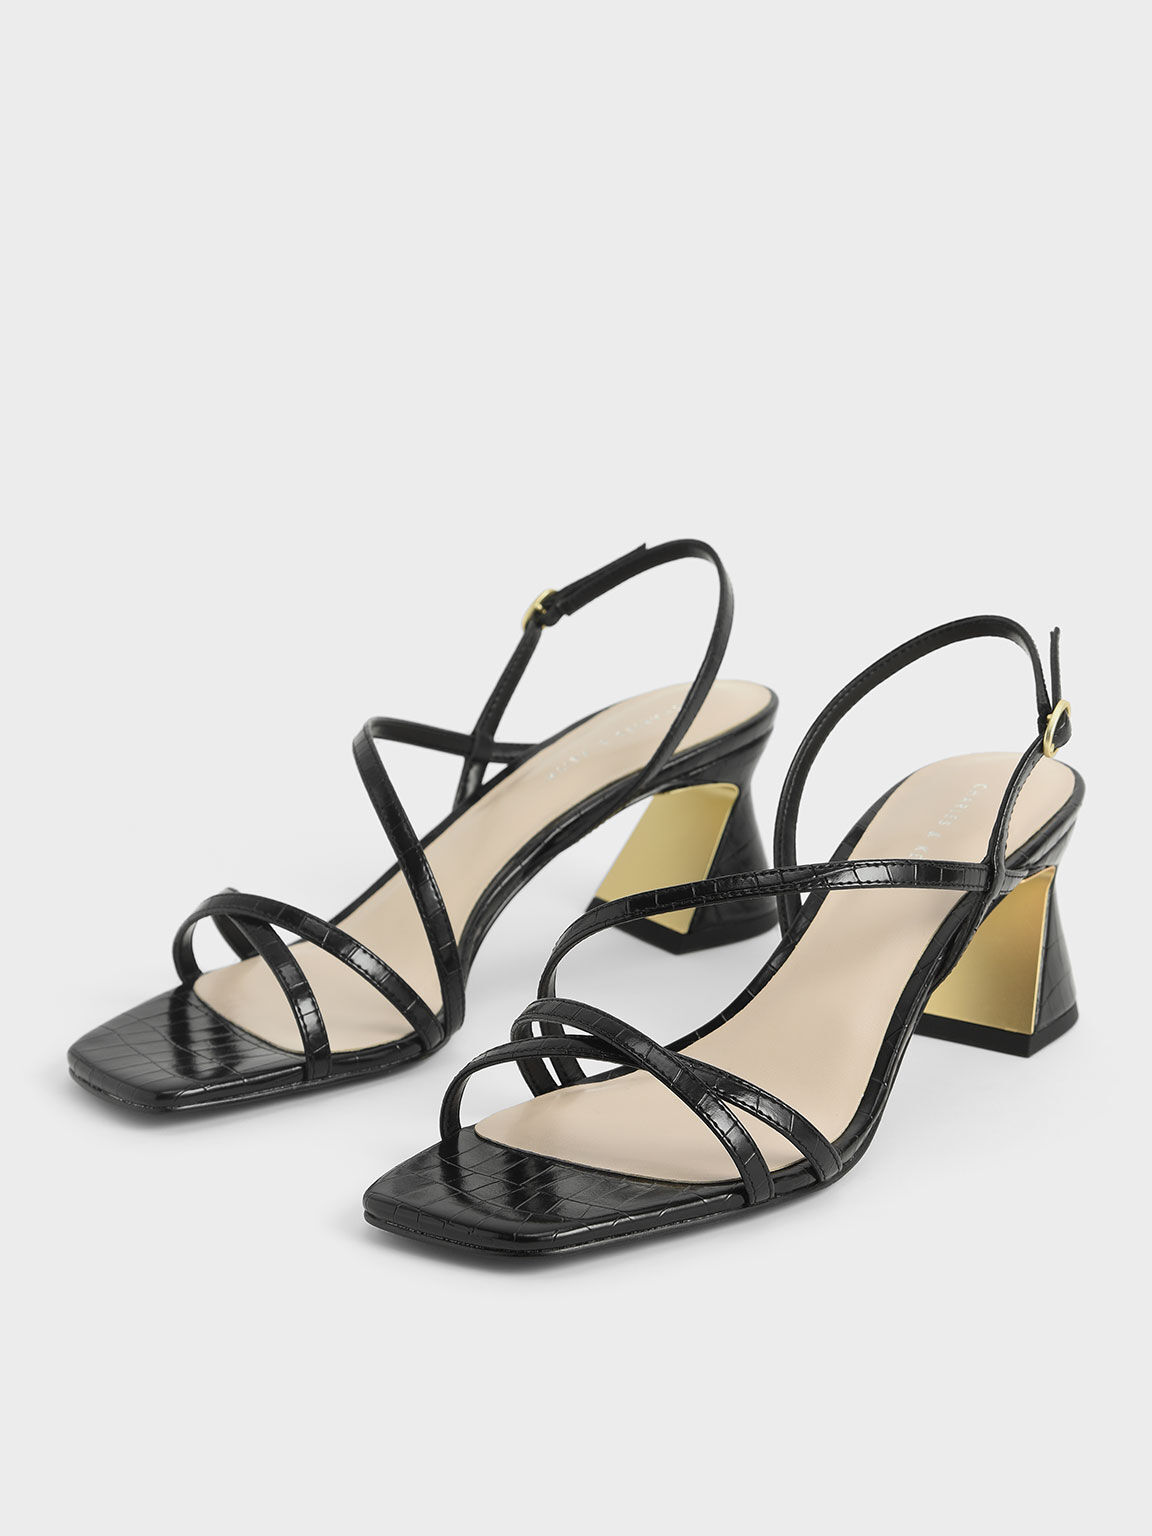 crocs Women's Black/Gold Flip Flops -W10 (15539-072) : Amazon.in: Fashion